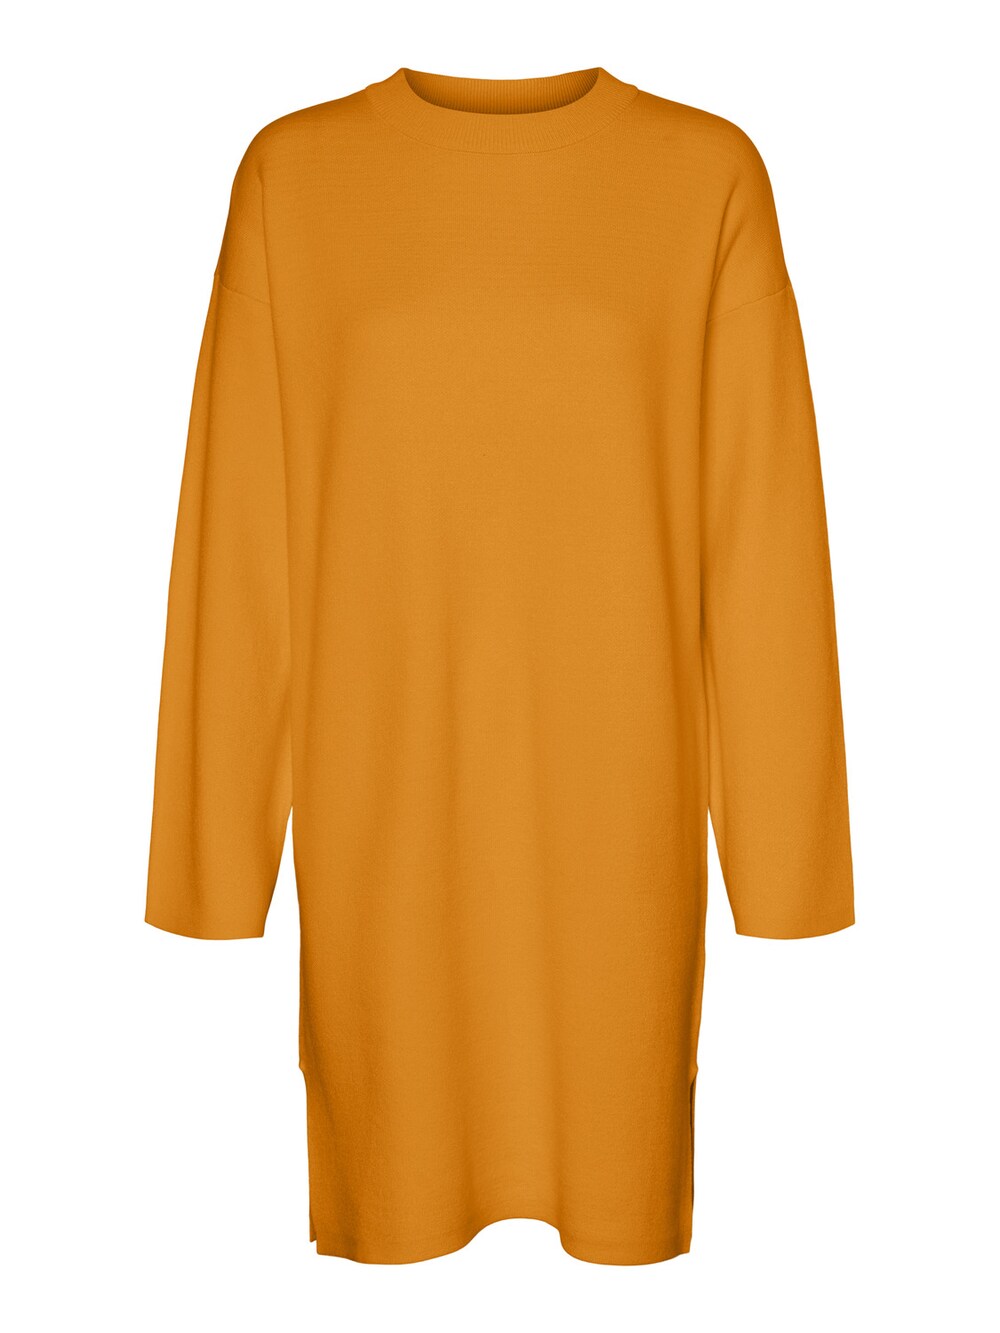 Вязанное платье Vero Moda, апельсин